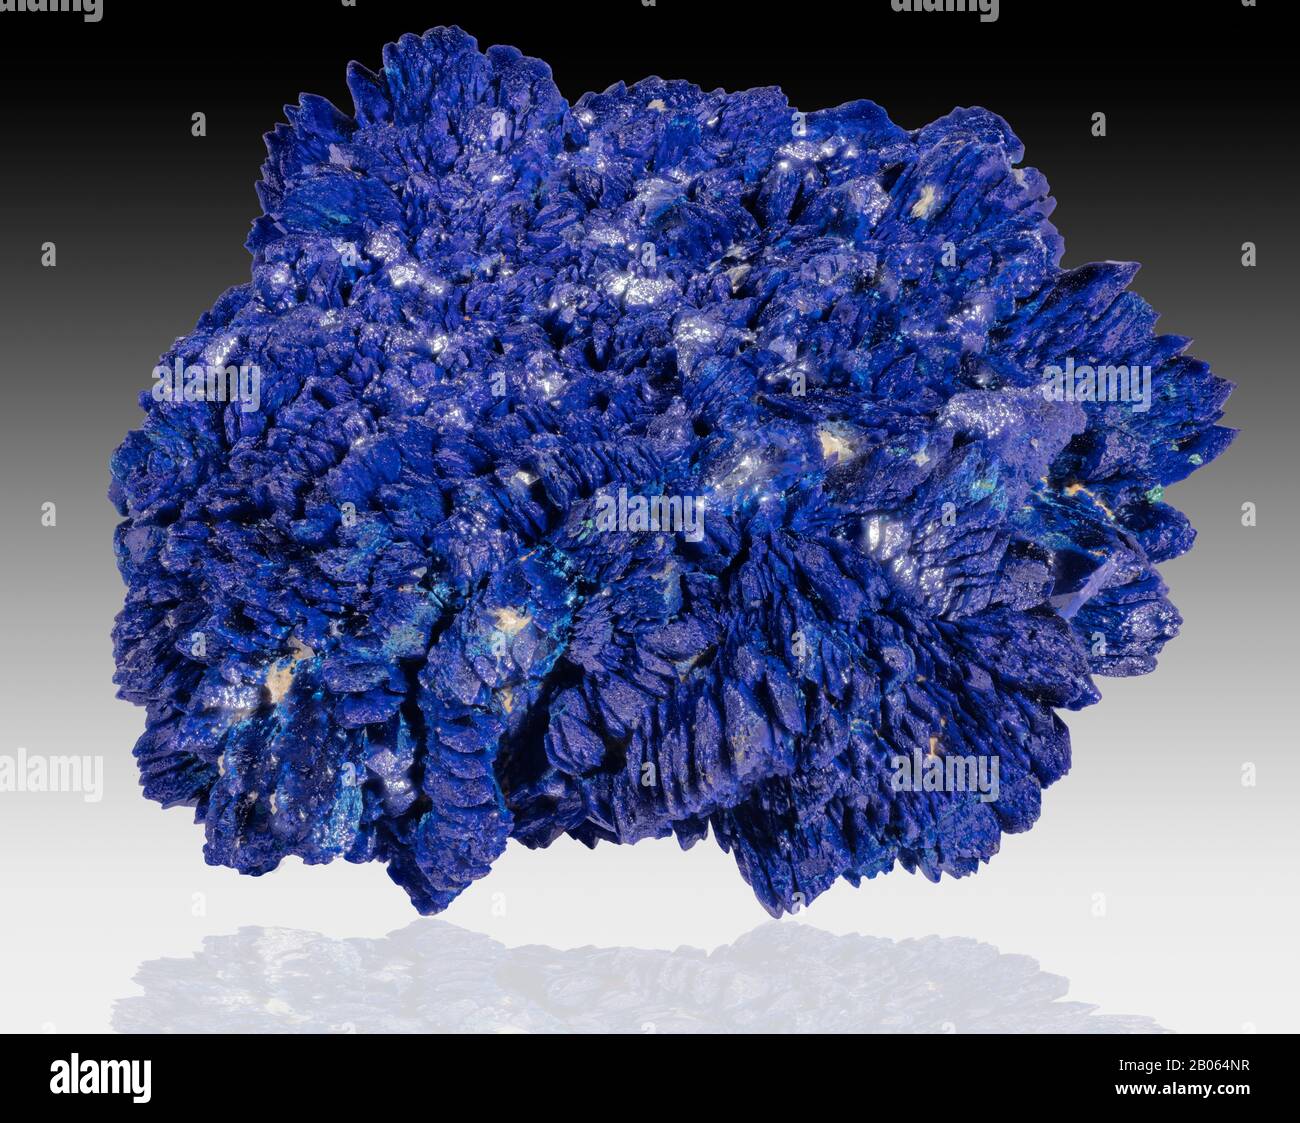 L'azurite è una pietra morbida, chiamata per il suo colore profondo "azzurro". Si tratta di un minerale di carbonato di rame presente nelle porzioni superiori ossidate di minerale di rame fo Foto Stock